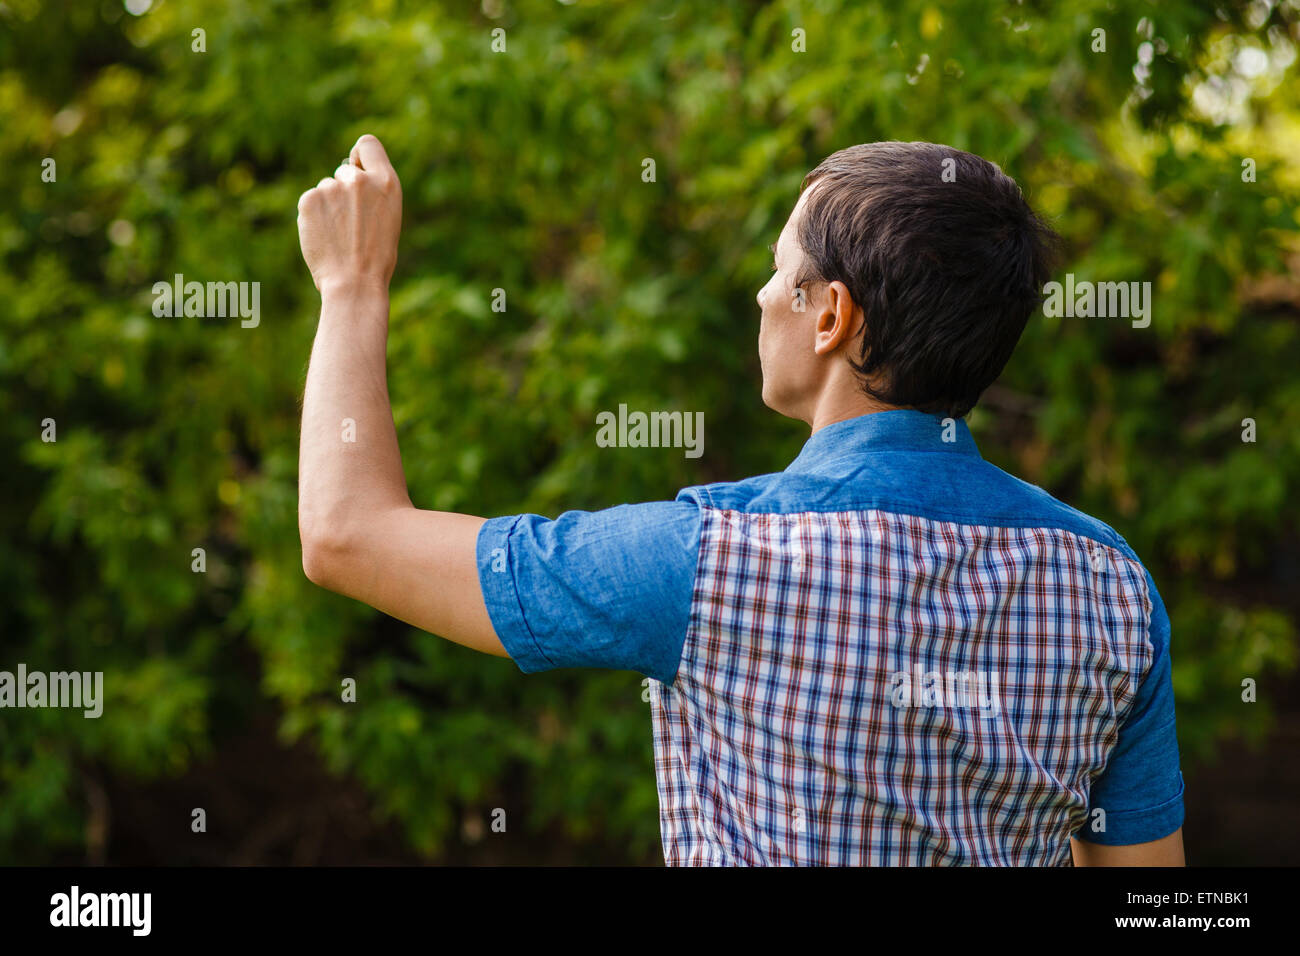 Mann, die Hand in der Luft zurück zu schreiben, auf einem grünen Hintergrund Straße t Stockfoto